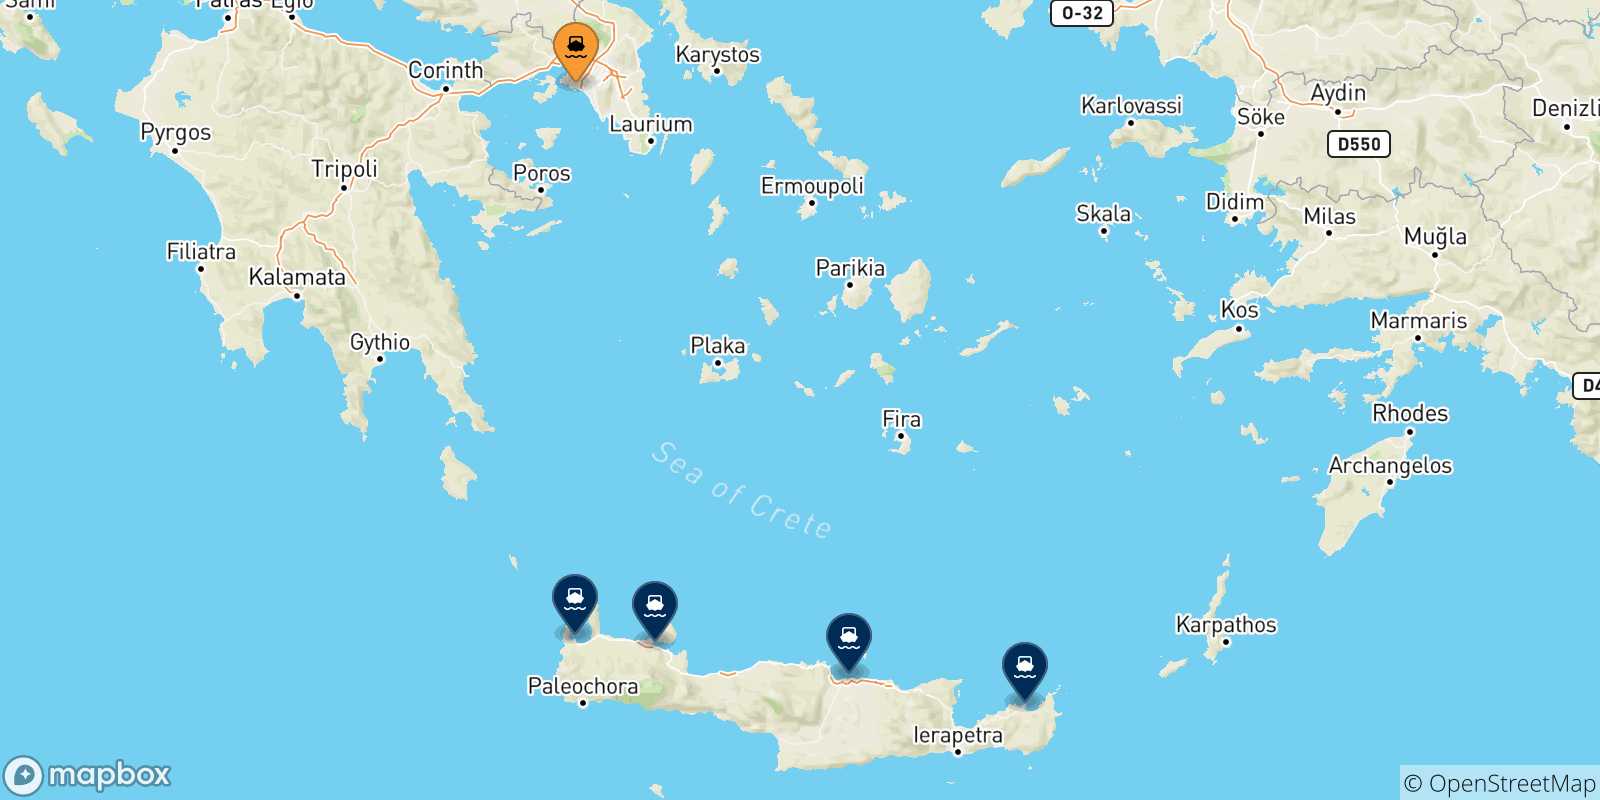 Mappa delle possibili rotte tra Pireo e Creta